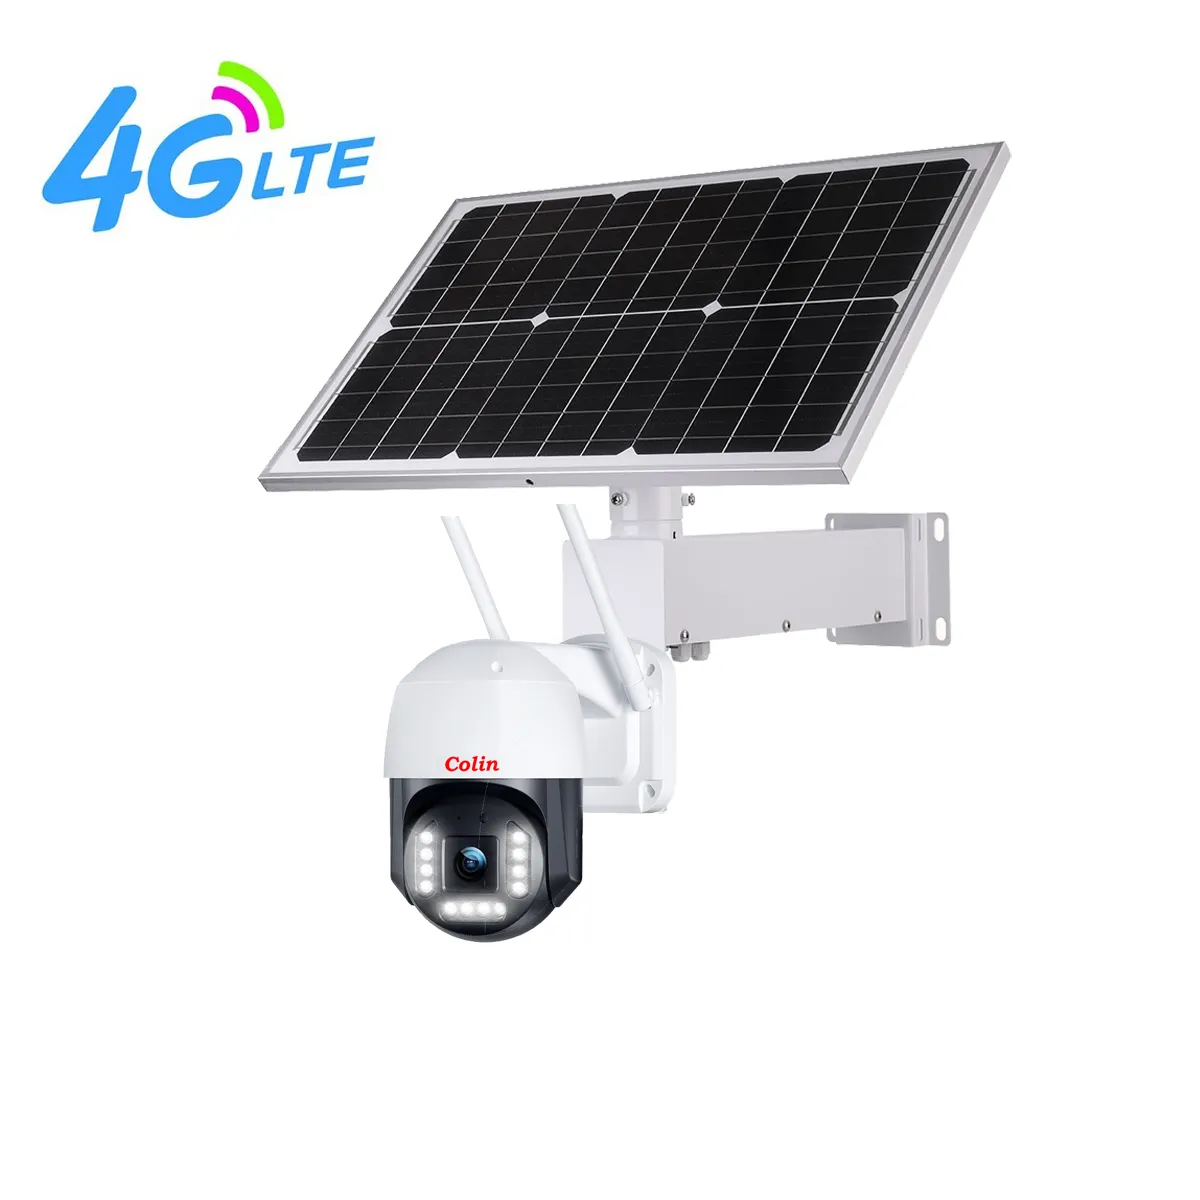 40 Wát 20Ah năng lượng mặt trời dây điện miễn phí Home an ninh giám sát Hệ thống camera cũng có thể Nhà cung cấp để Y5 máy ảnh